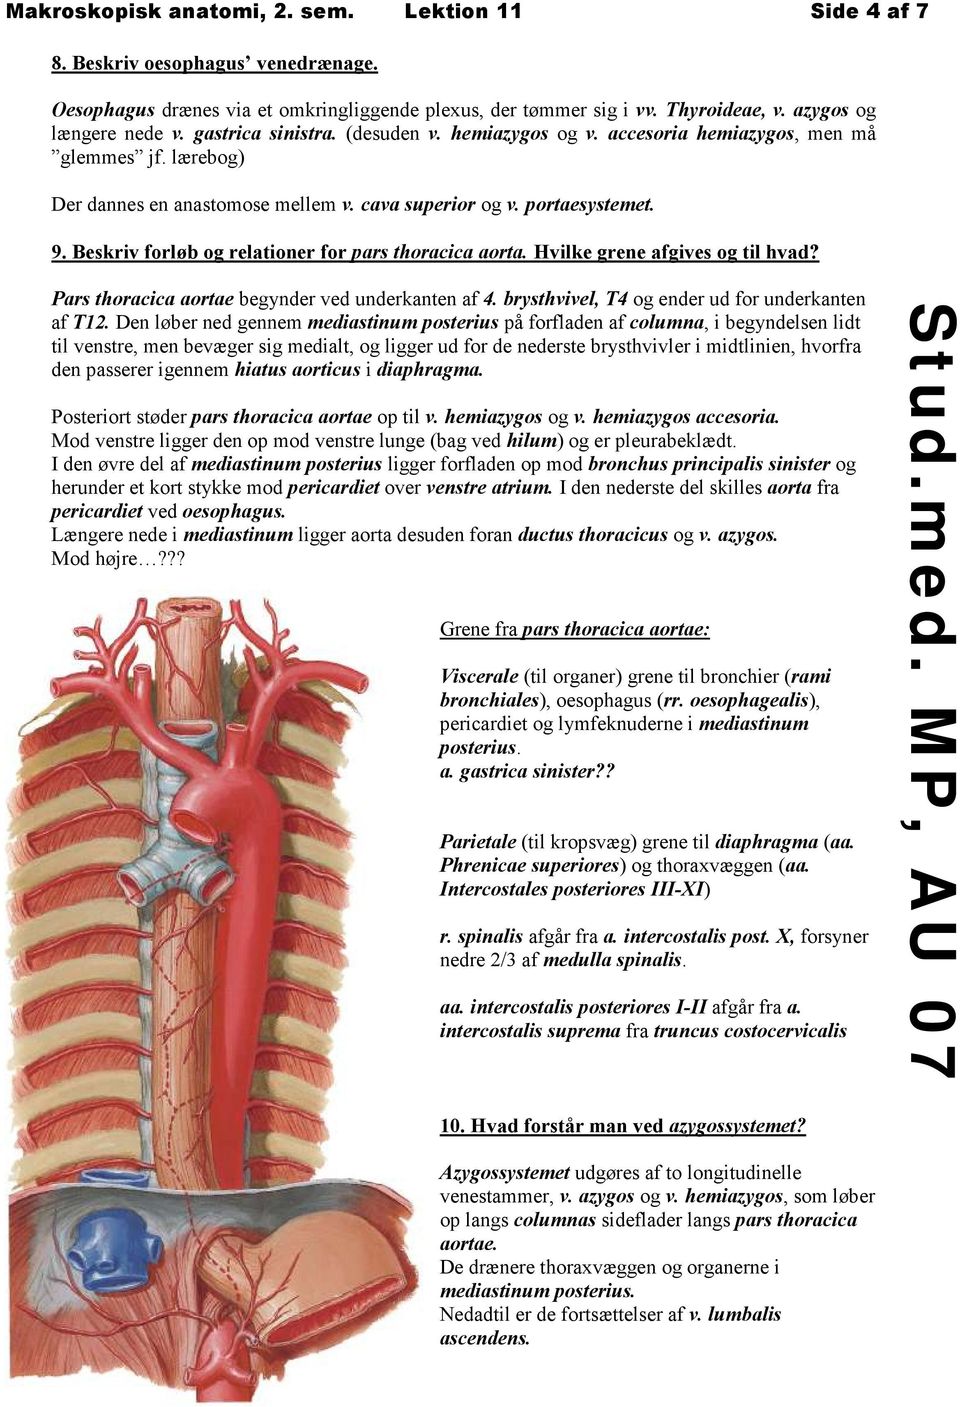 Beskriv forløb og relationer for pars thoracica aorta. Hvilke grene afgives og til hvad? Pars thoracica aortae begynder ved underkanten af 4. brysthvivel, T4 og ender ud for underkanten af T12.